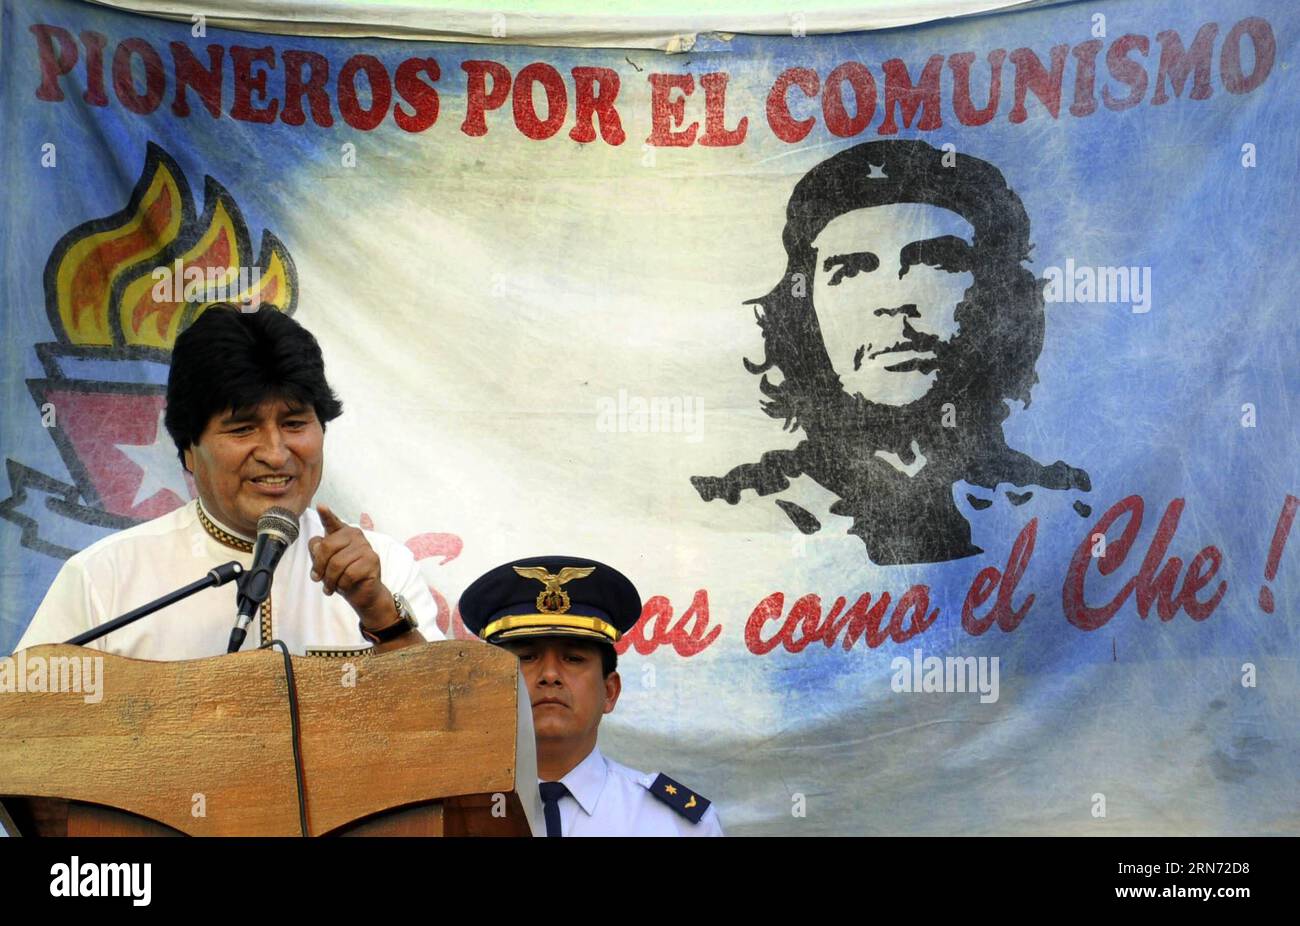 LA HAVANE, le 13 août 2015 -- le président bolivien Evo Morales prononce un discours lors de sa visite à l'école Estado Plurinacional de Bolivia, dans la municipalité du centre de la Havane, à Cuba, le 13 août 2015. Selon la presse locale, le président bolivien Evo Morales a livré jeudi des fournitures scolaires aux élèves et a fait don d’ordinateurs portables à l’école Estado Plurinacional de Bolivia lors de sa visite à la Havane. Evo Morales est arrivé mercredi soir à Cuba pour célébrer le 89e anniversaire du leader révolutionnaire cubain Fidel Castro. Str) (vf) LE PRÉSIDENT CUBAIN-BOLIVIEN VISITE Joaquin PUBLICATIONxNOTxINxCHN la Havane Banque D'Images